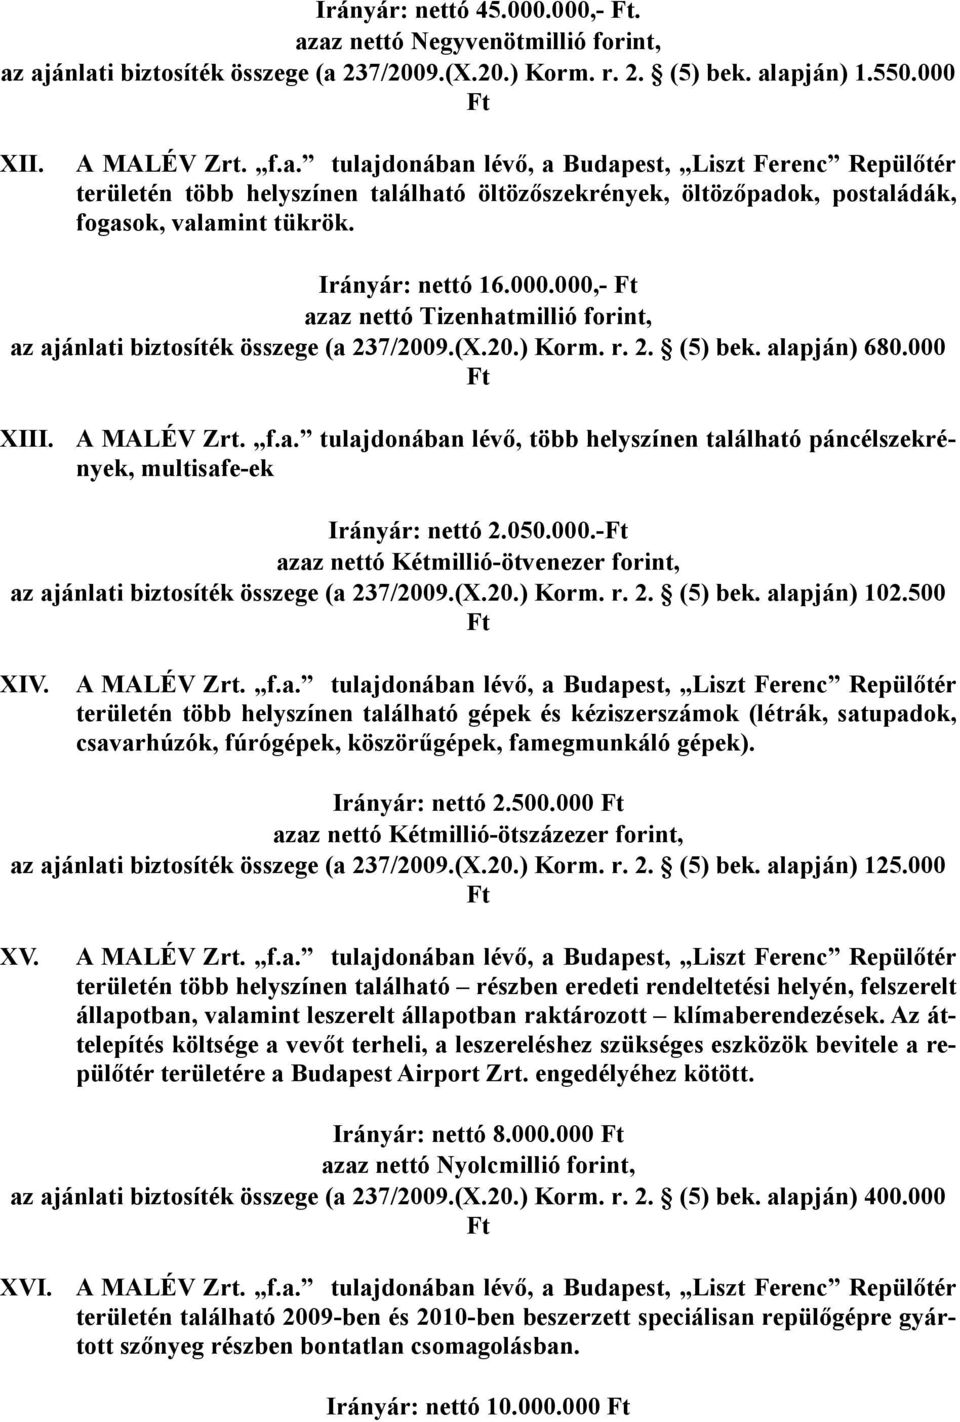 000,- azaz nettó Tizenhatmillió forint, az ajánlati biztosíték összege (a 237/2009.(X.20.) Korm. r. 2. (5) bek. alapján) 680.000 XIII. A MALÉV Zrt. f.a. tulajdonában lévı, több helyszínen található páncélszekrények, multisafe-ek Irányár: nettó 2.